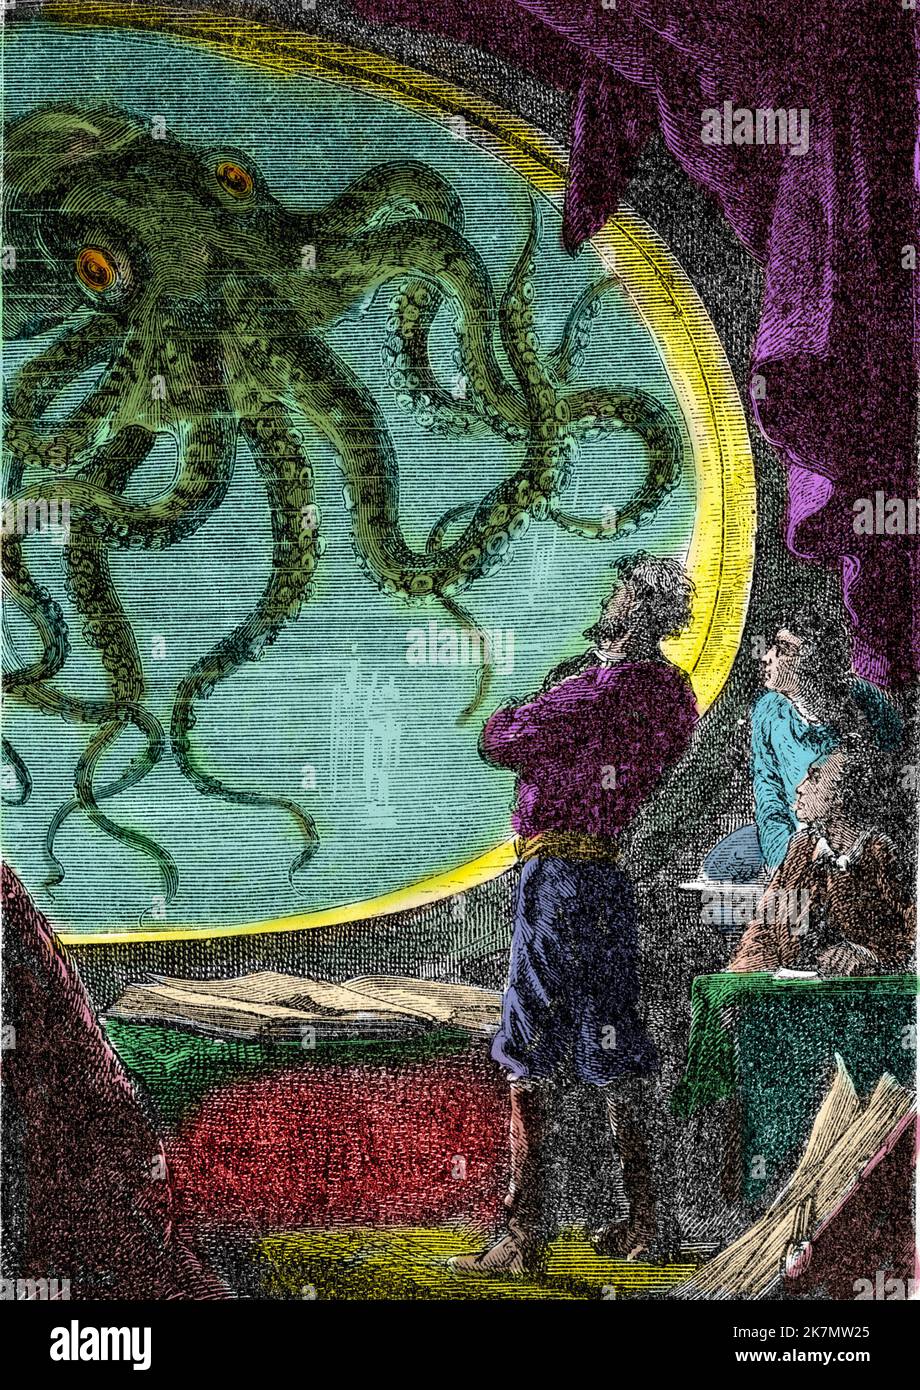 Twenty Thousand Leagues Under the Seas - 'Ned Land, le professeur Aronnax et son domestique Conseil regardent la pieuvre geante a travers le hublot du sous marin Nautilus' Gravure du livre de Jules Verne 'Vingt mille lieues sous les mers' (Vingt-mille - 20 000 - 20000), 1870. Stock Photo